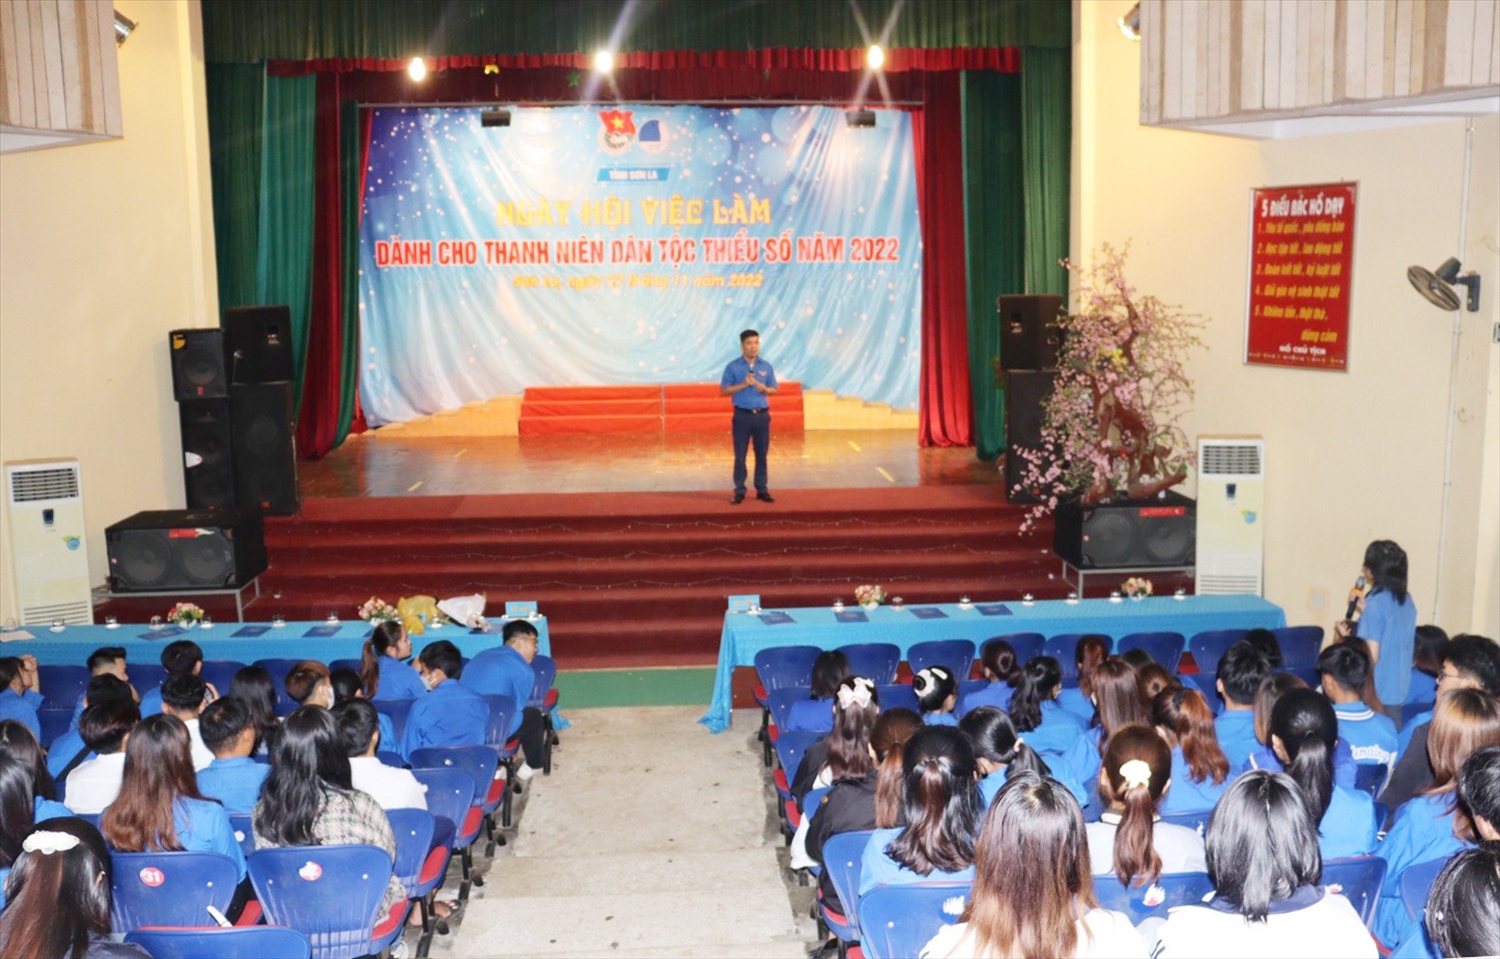 Ngày hội việc làm dành cho thanh niên DTTS tỉnh Sơn La năm 2022 được tổ chức ở Tp. Sơn La. (Ảnh: Hoàng Quyên)